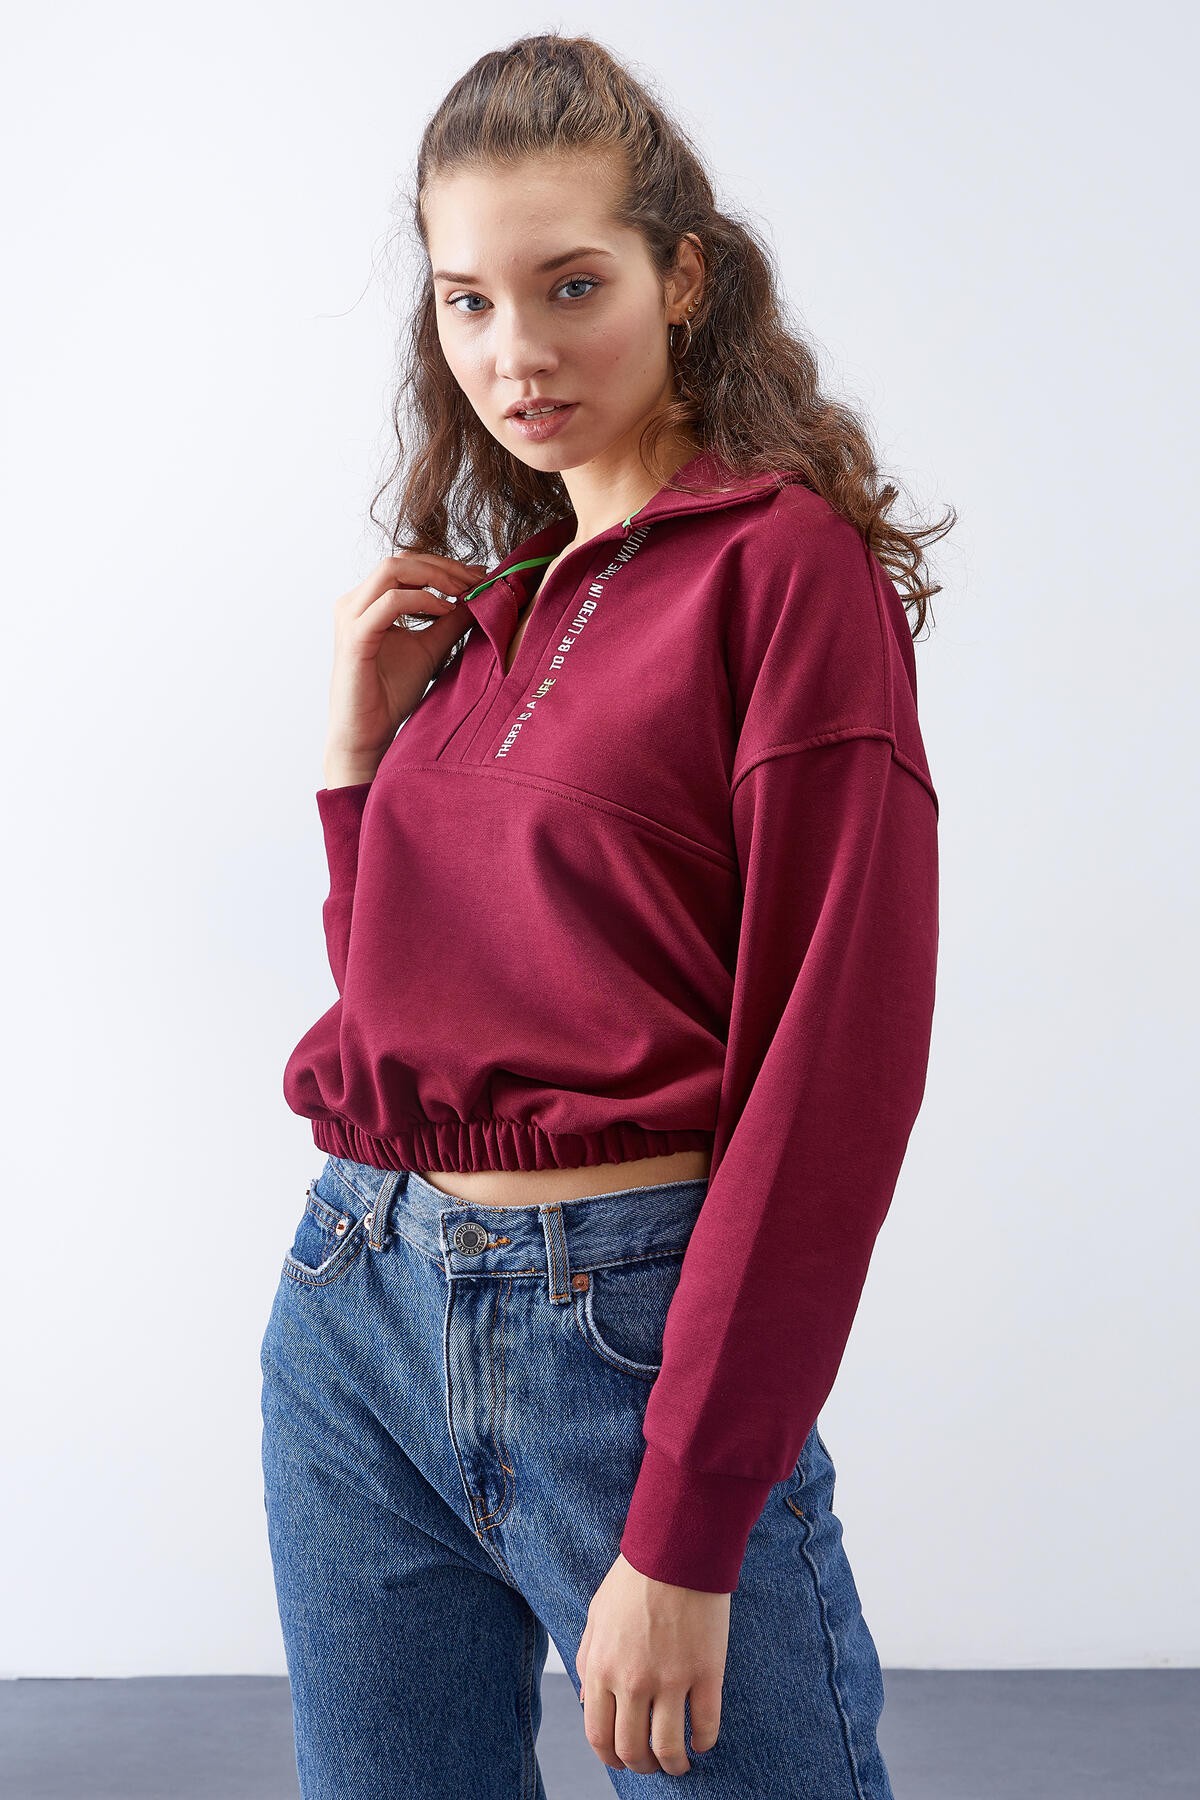 TommyLife - Erguvan Polo Yaka Etek Ucu Büzgülü Kadın Oversize Sweatshirt - 97180